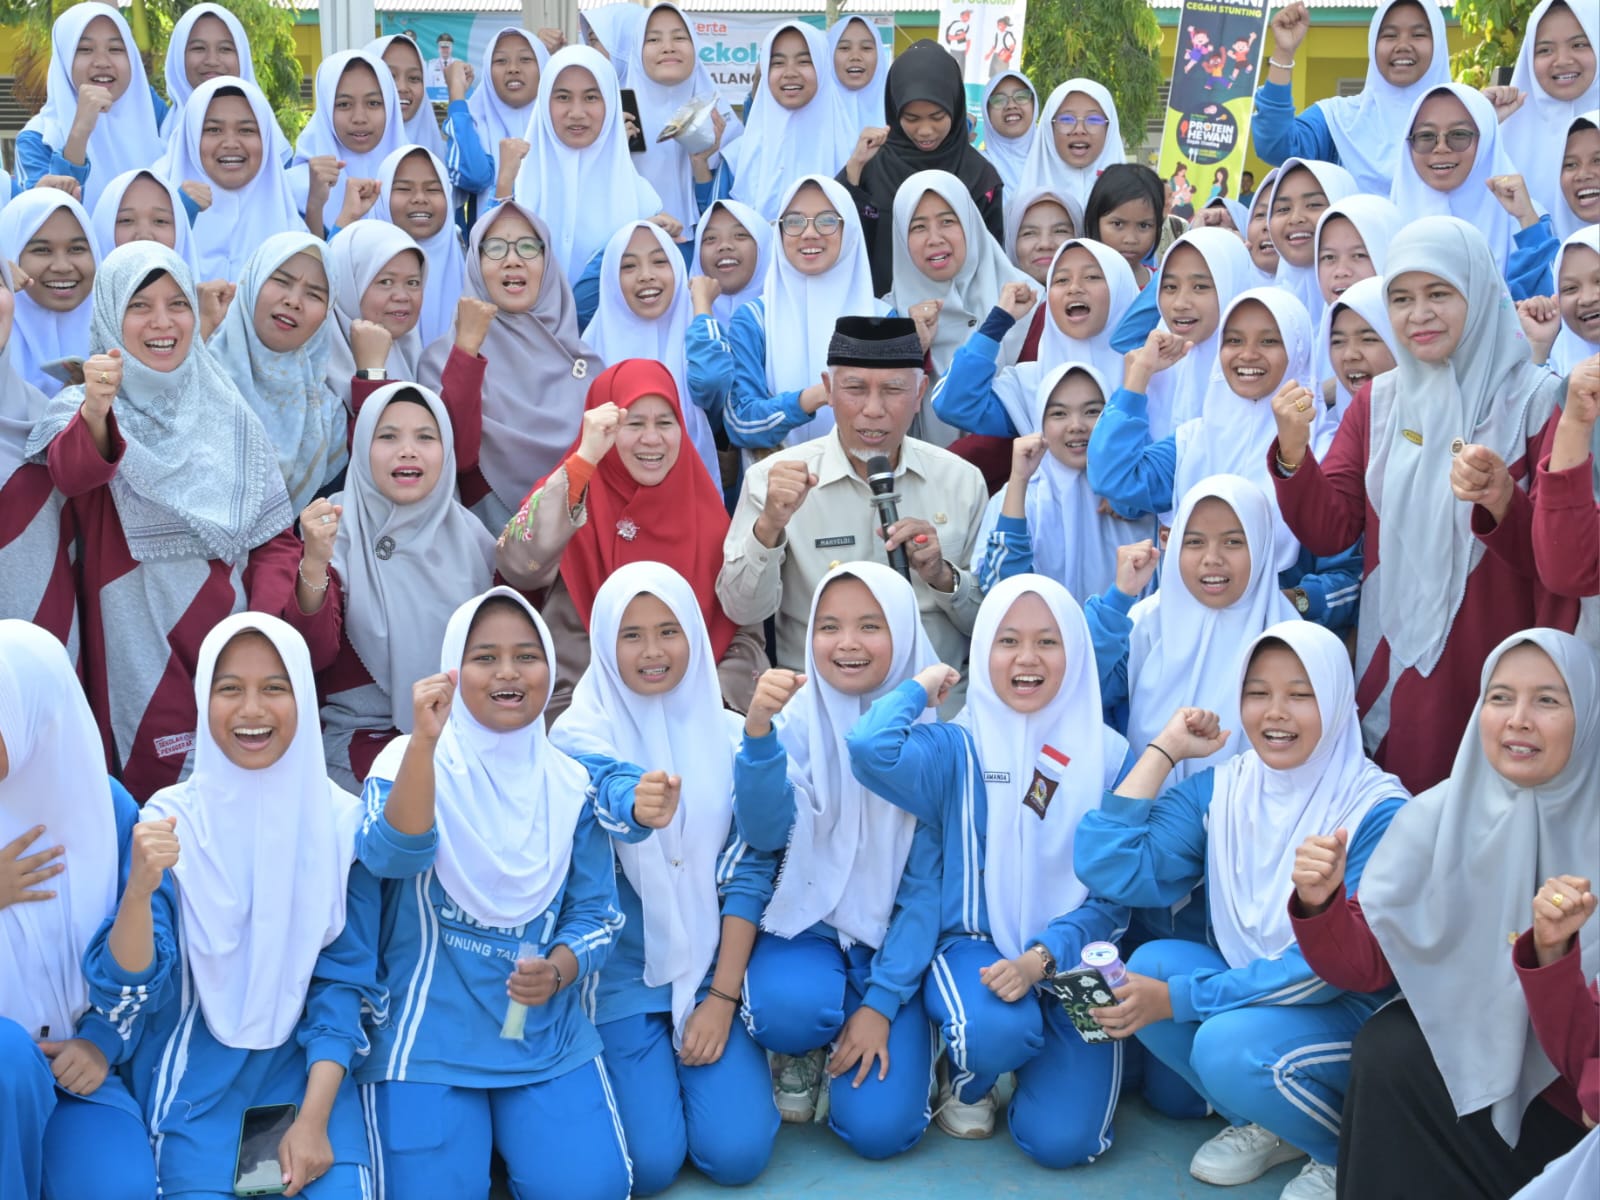 Gubernur Sumbar, Mahyeldi, saat mencanangkan gerakan Aksi Bergizi, bersama siswa SMA I Gunung Talang, Kabupaten Solok. Foto Adpsb.